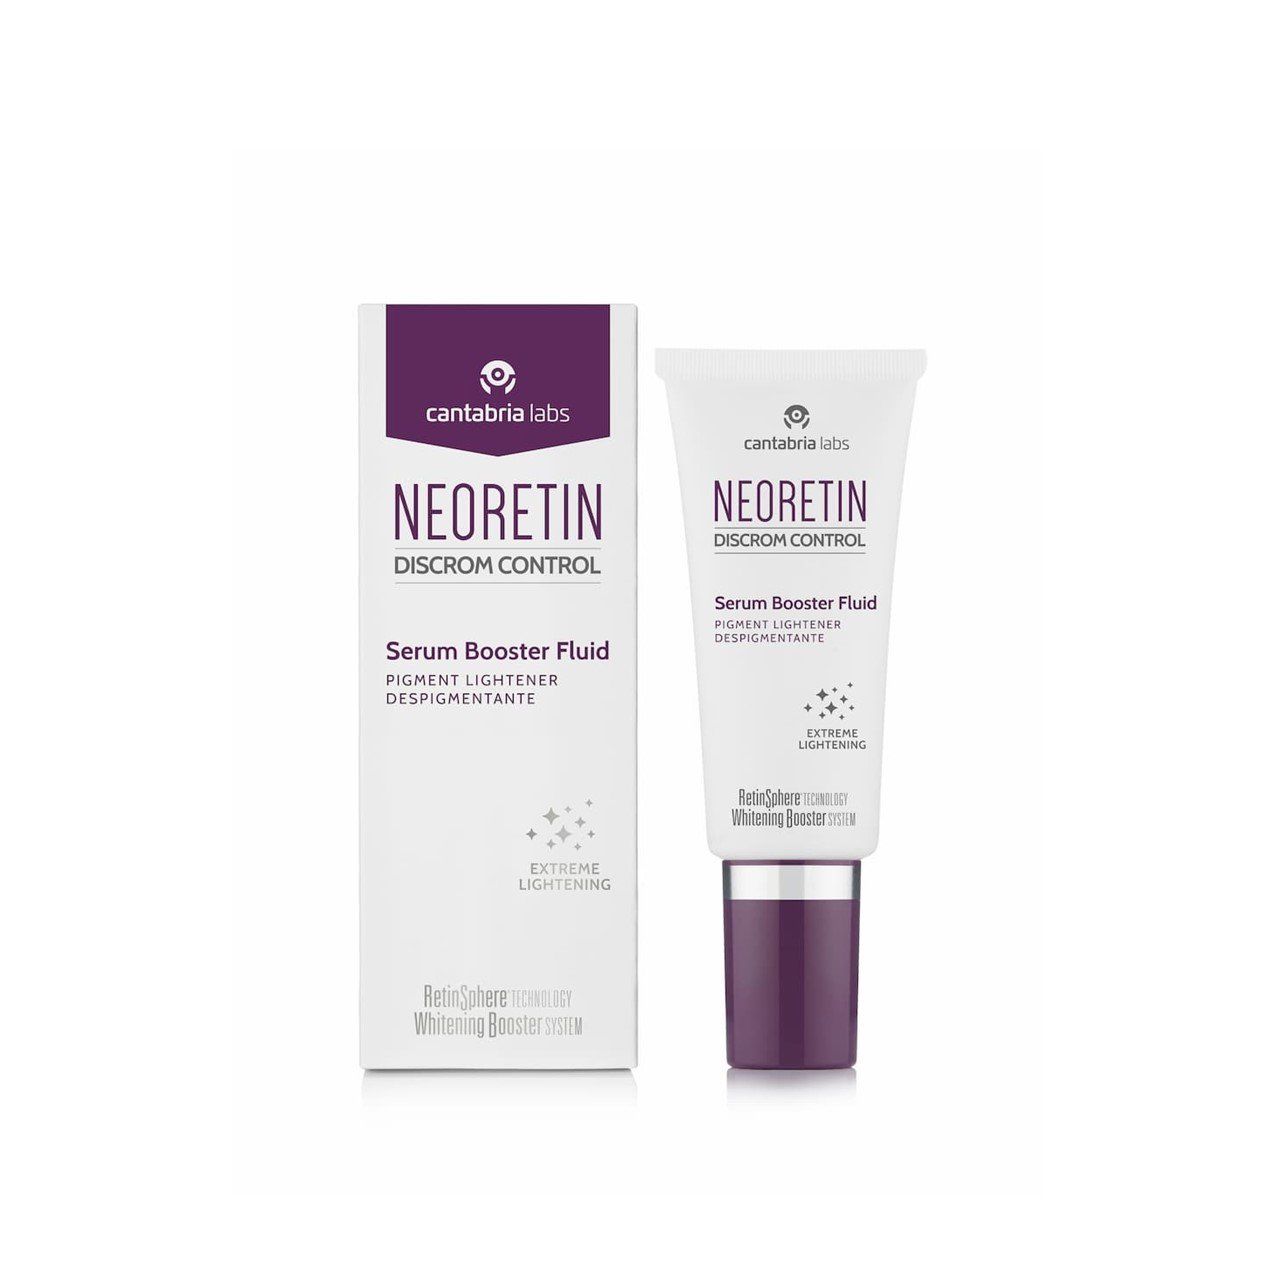 Neoretin serum Booster